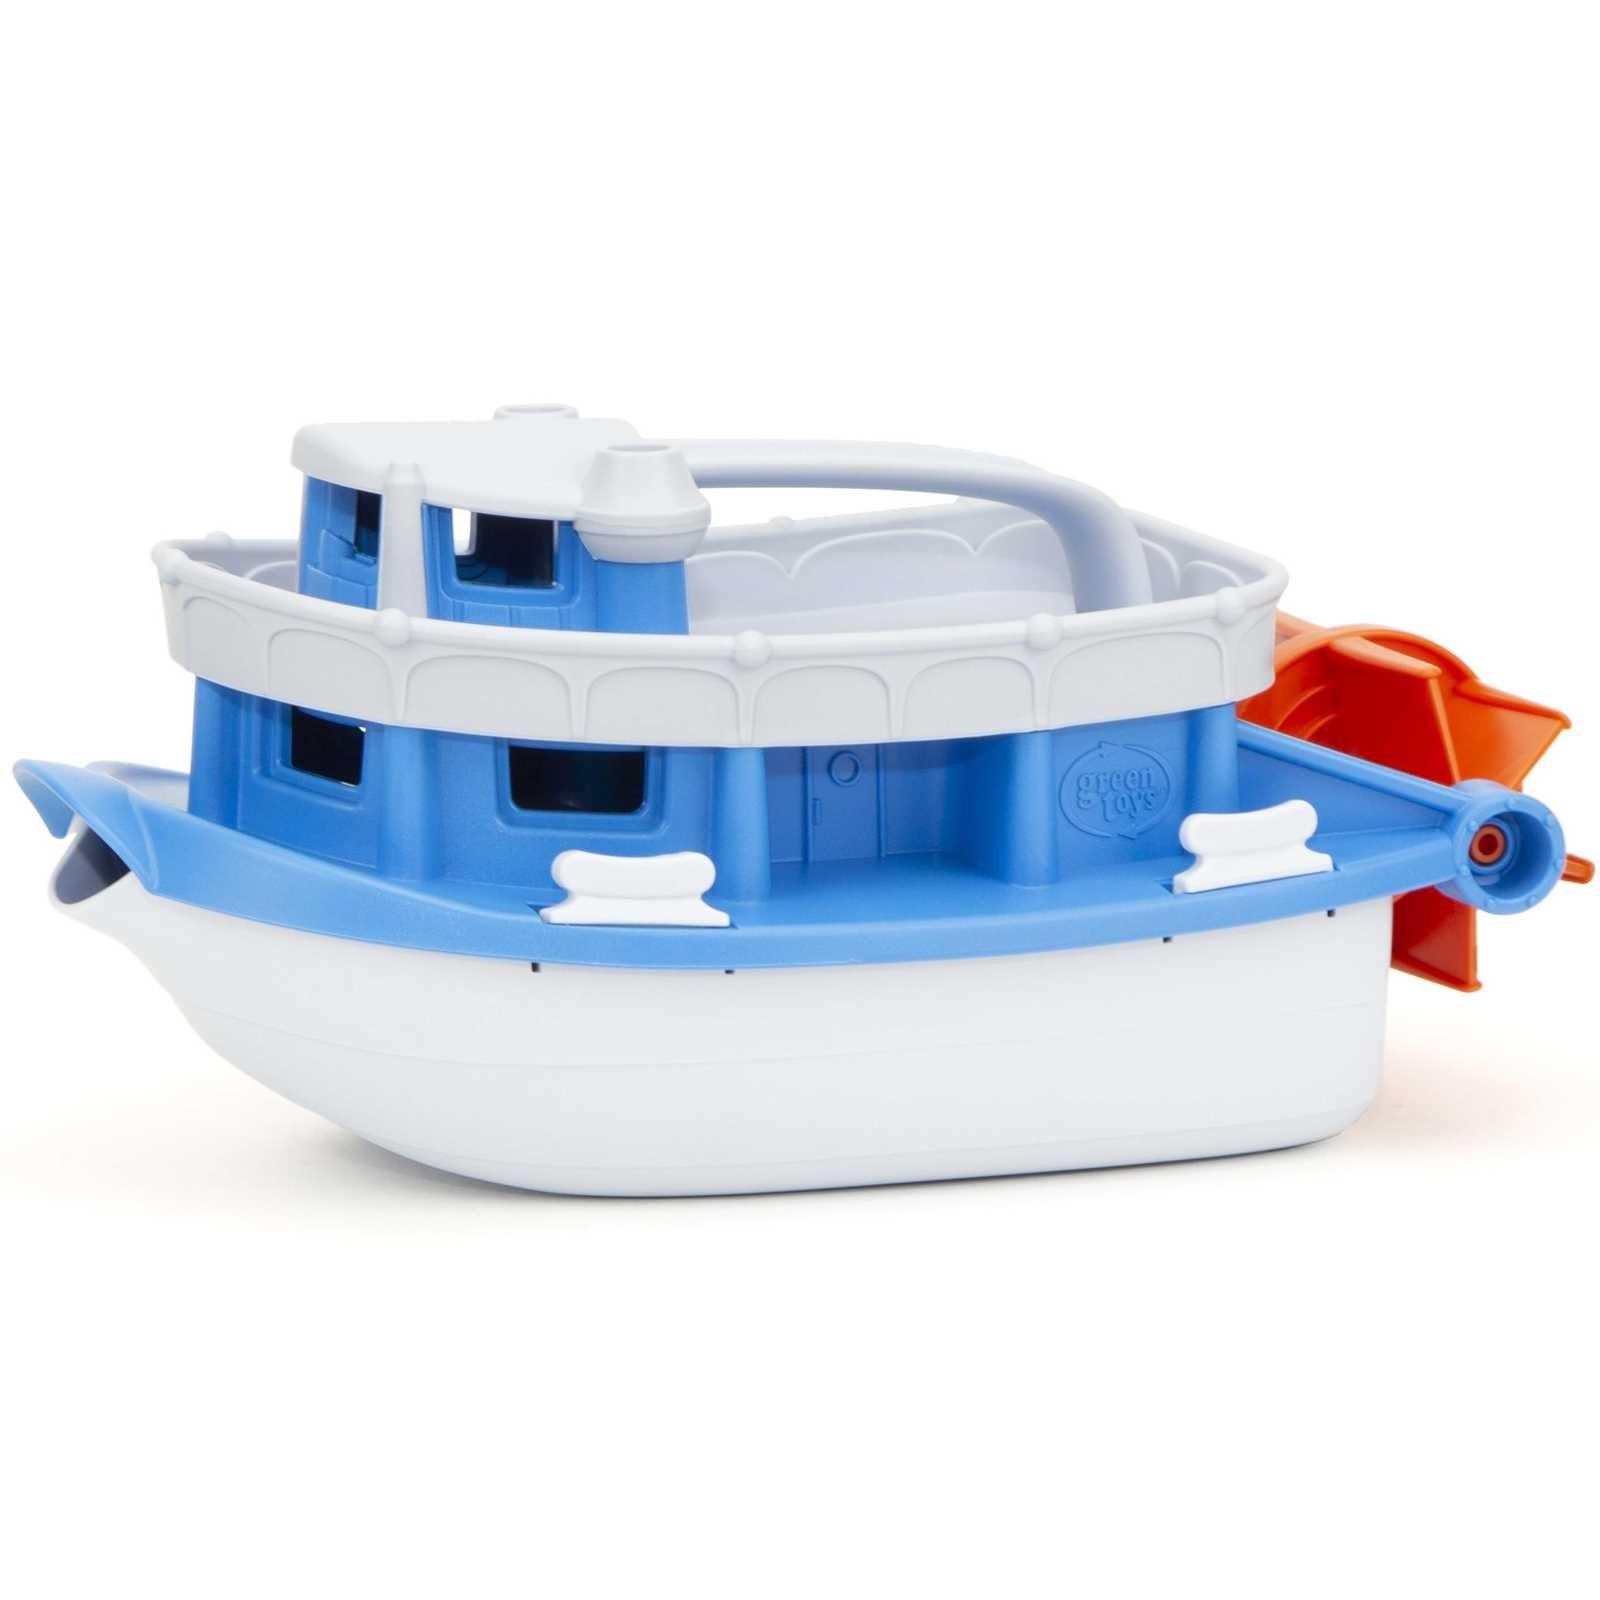 Green Toys: stateczek wycieczkowy Paddle Boat - Noski Noski